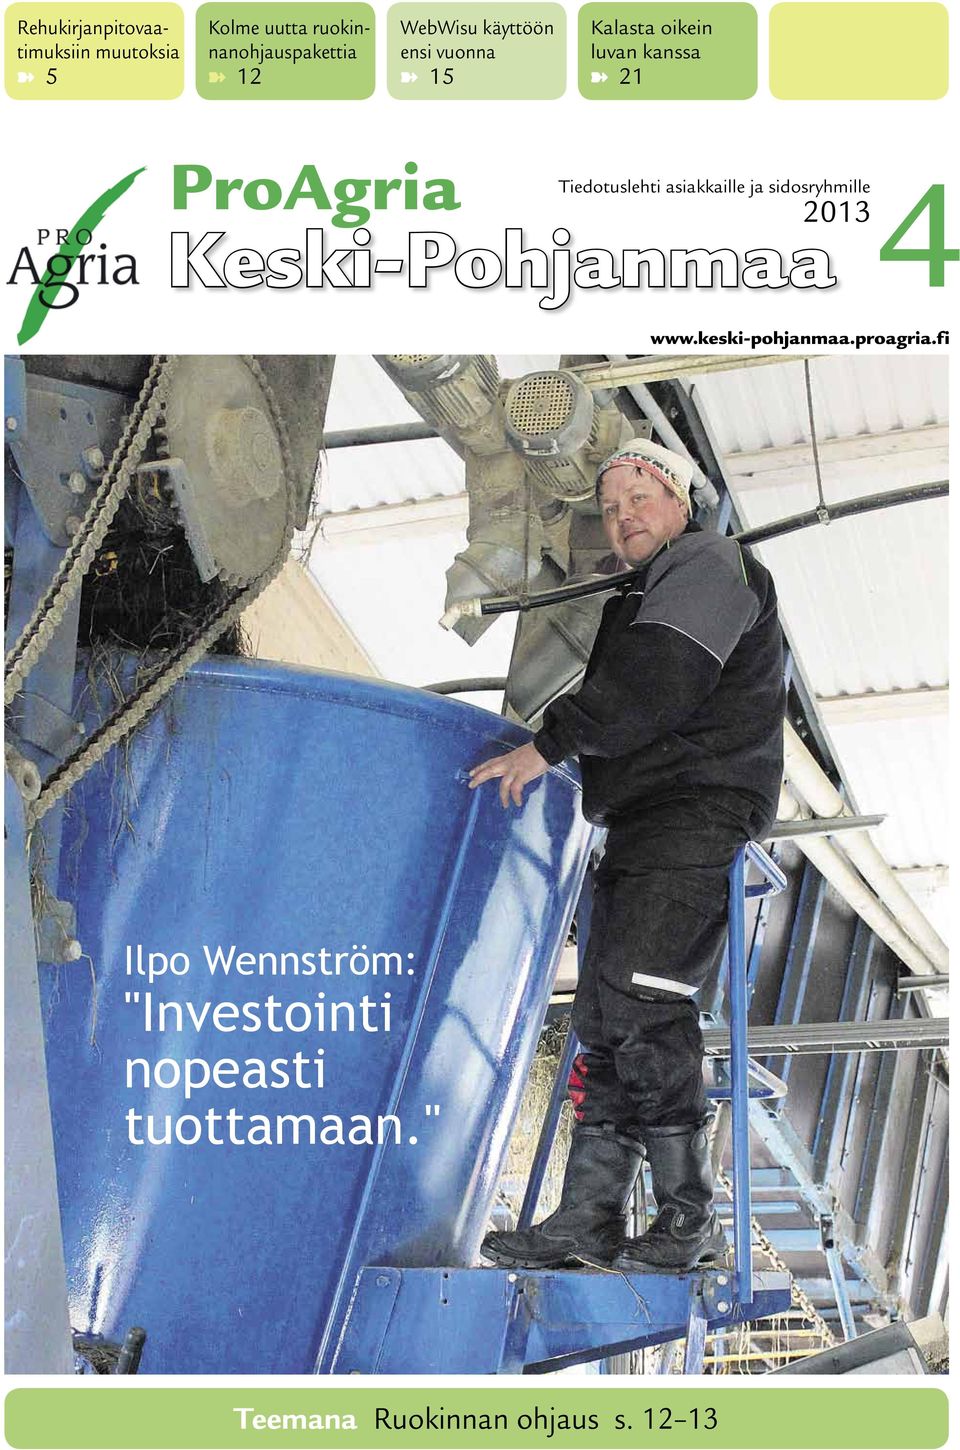 Tiedotuslehti asiakkaille ja sidosryhmille 2013 Keski-Pohjanmaa www.